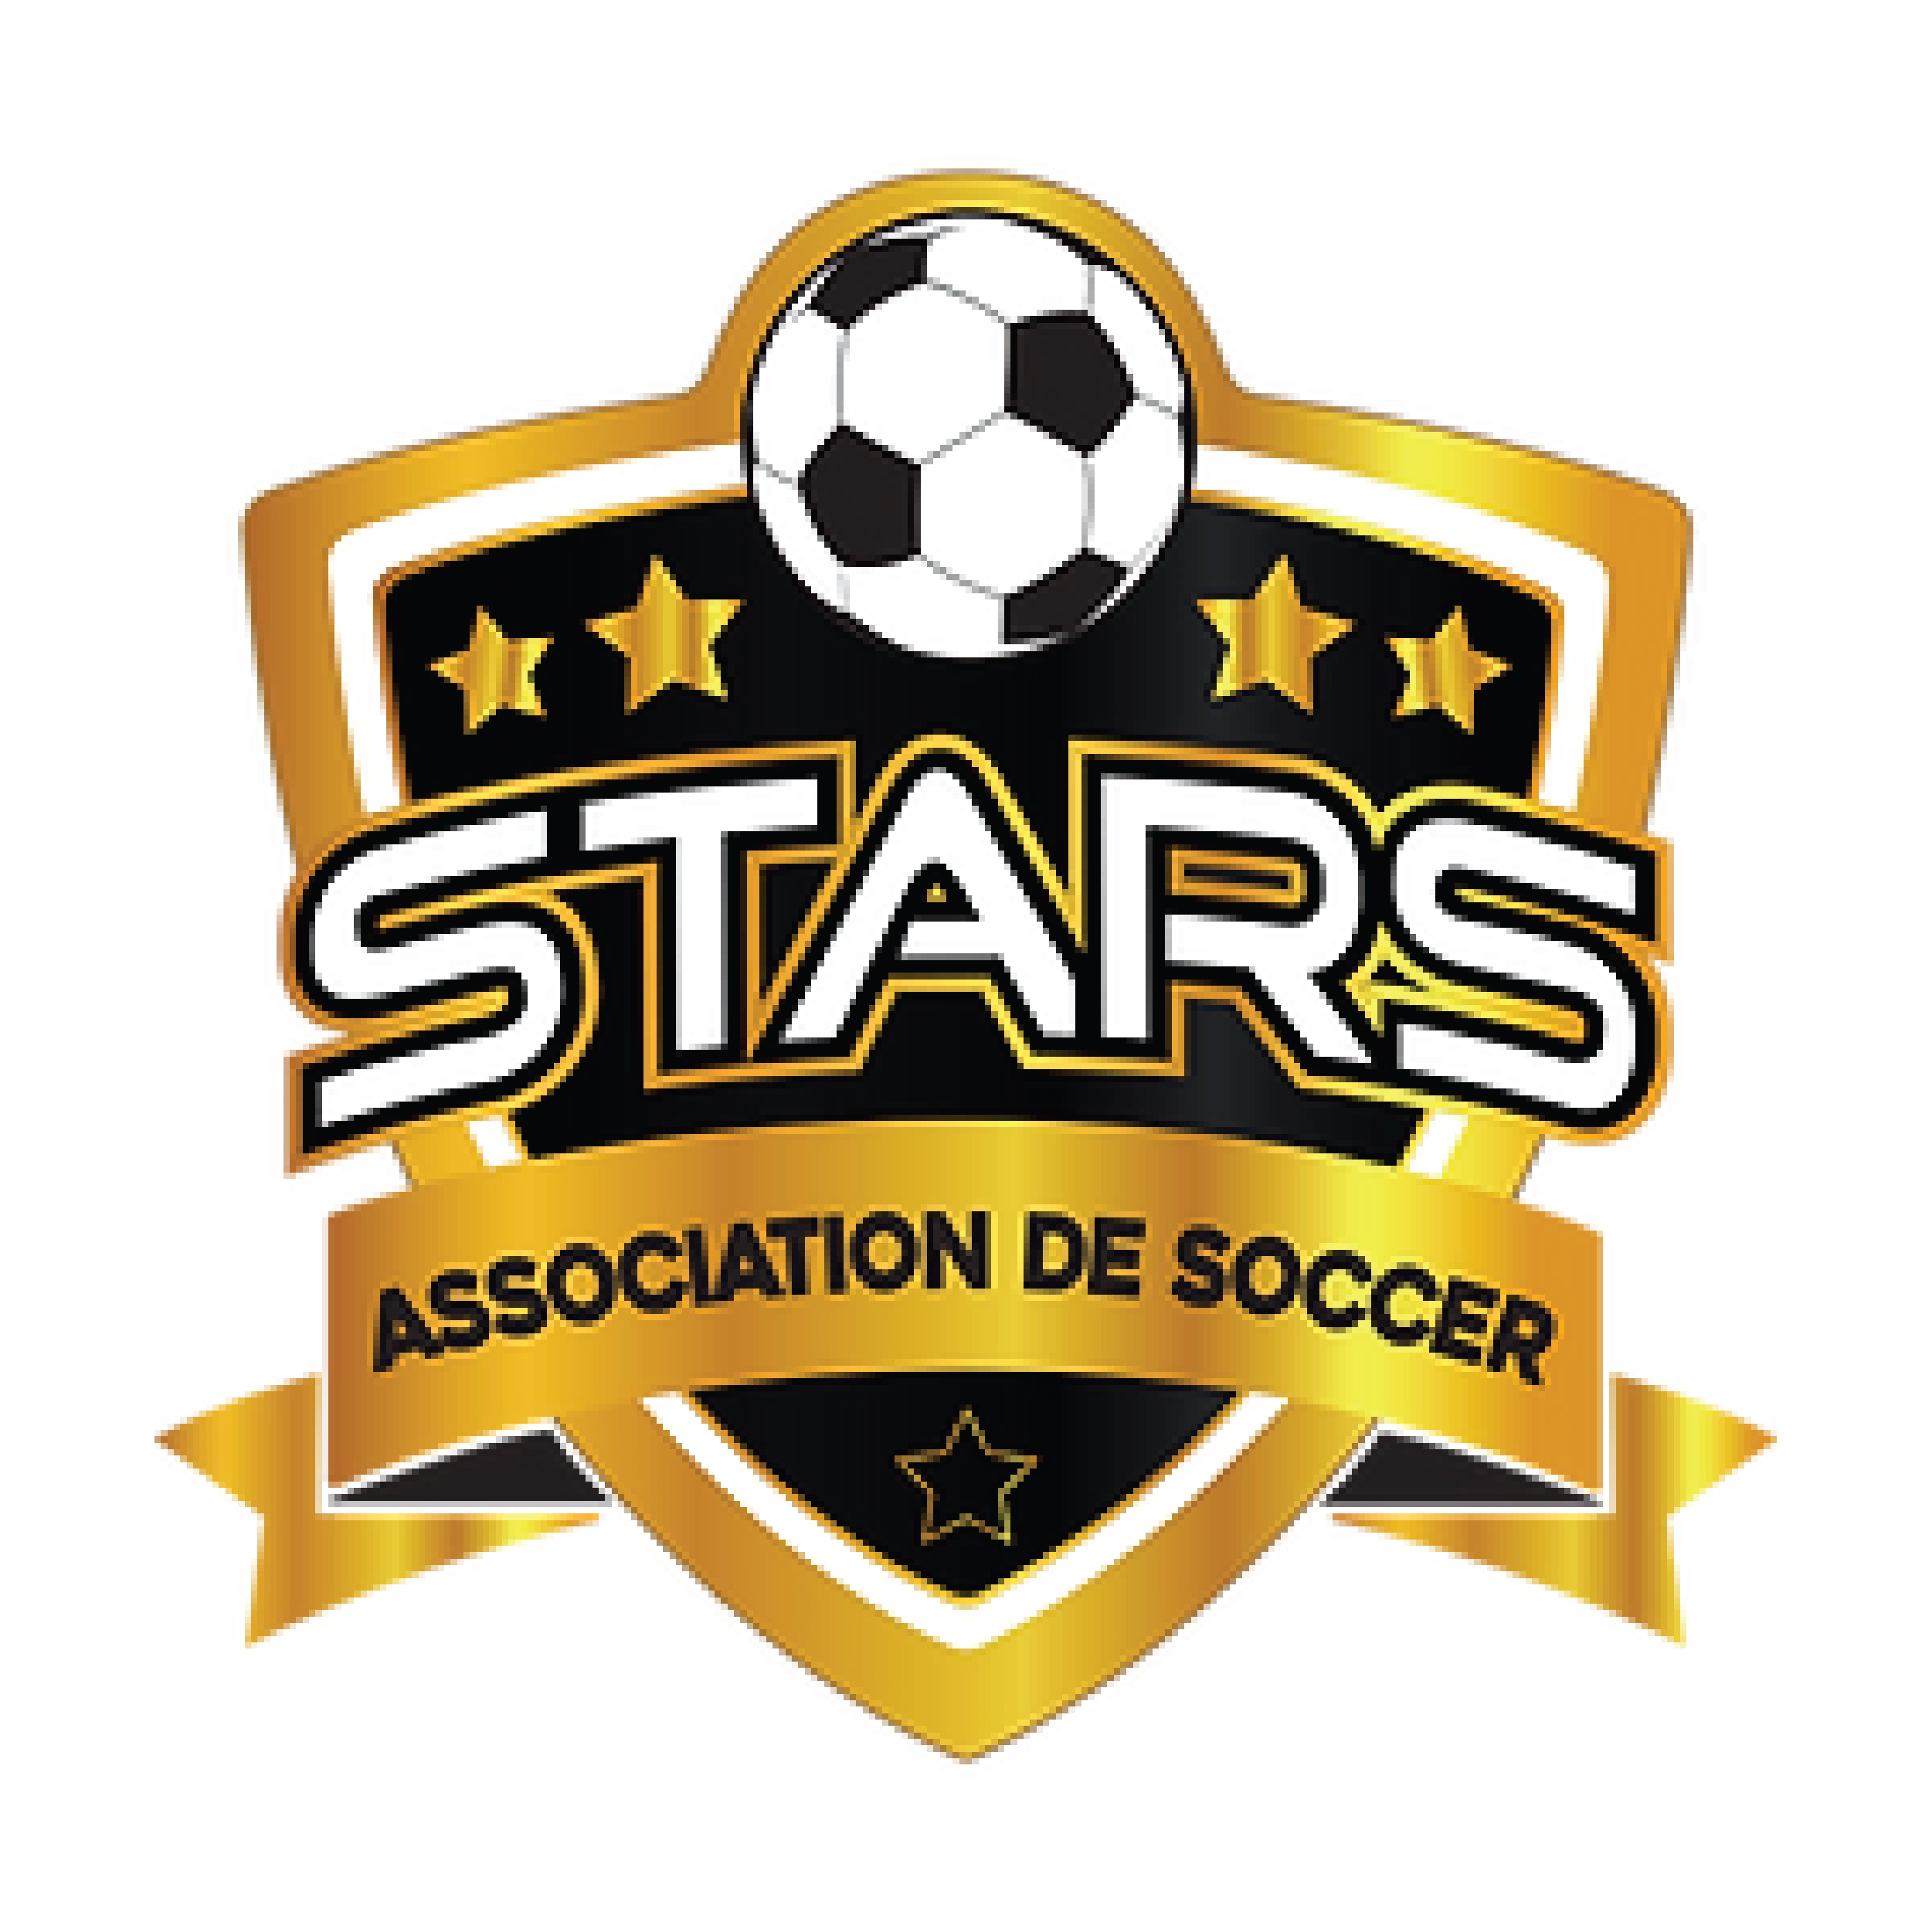 Association de soccer Stars